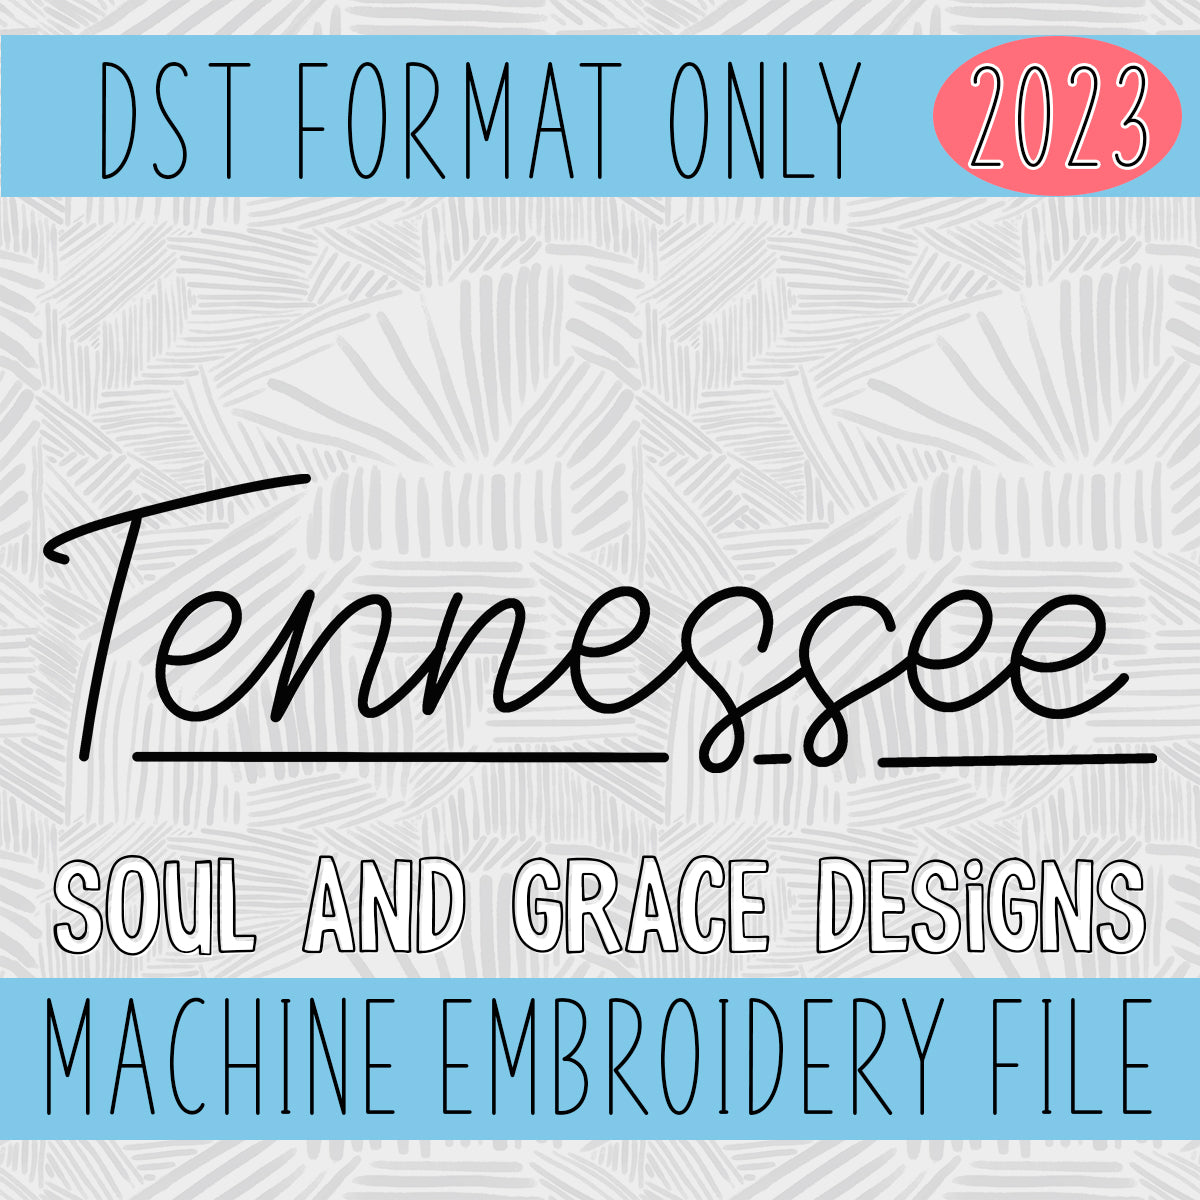 Handwritten Tennessee Machine Embroidery Design [DST]